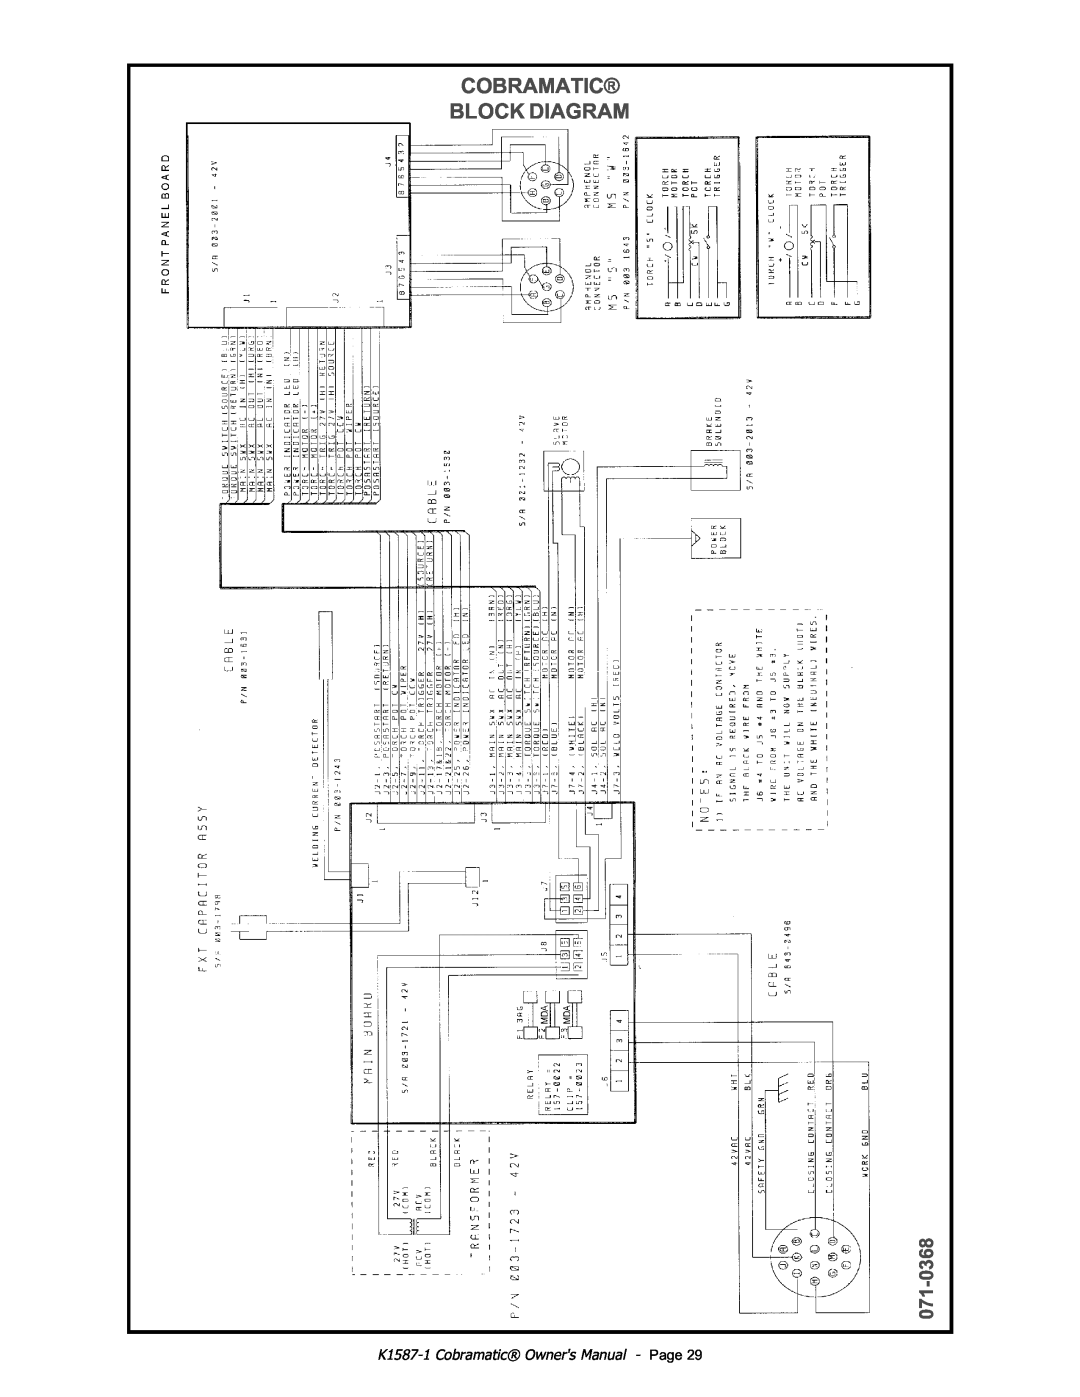 Lincoln Electric IM597 manual Cobramatic Block Diagram, 071-0368, K1587-1 Cobramatic Owners Manual - Page 